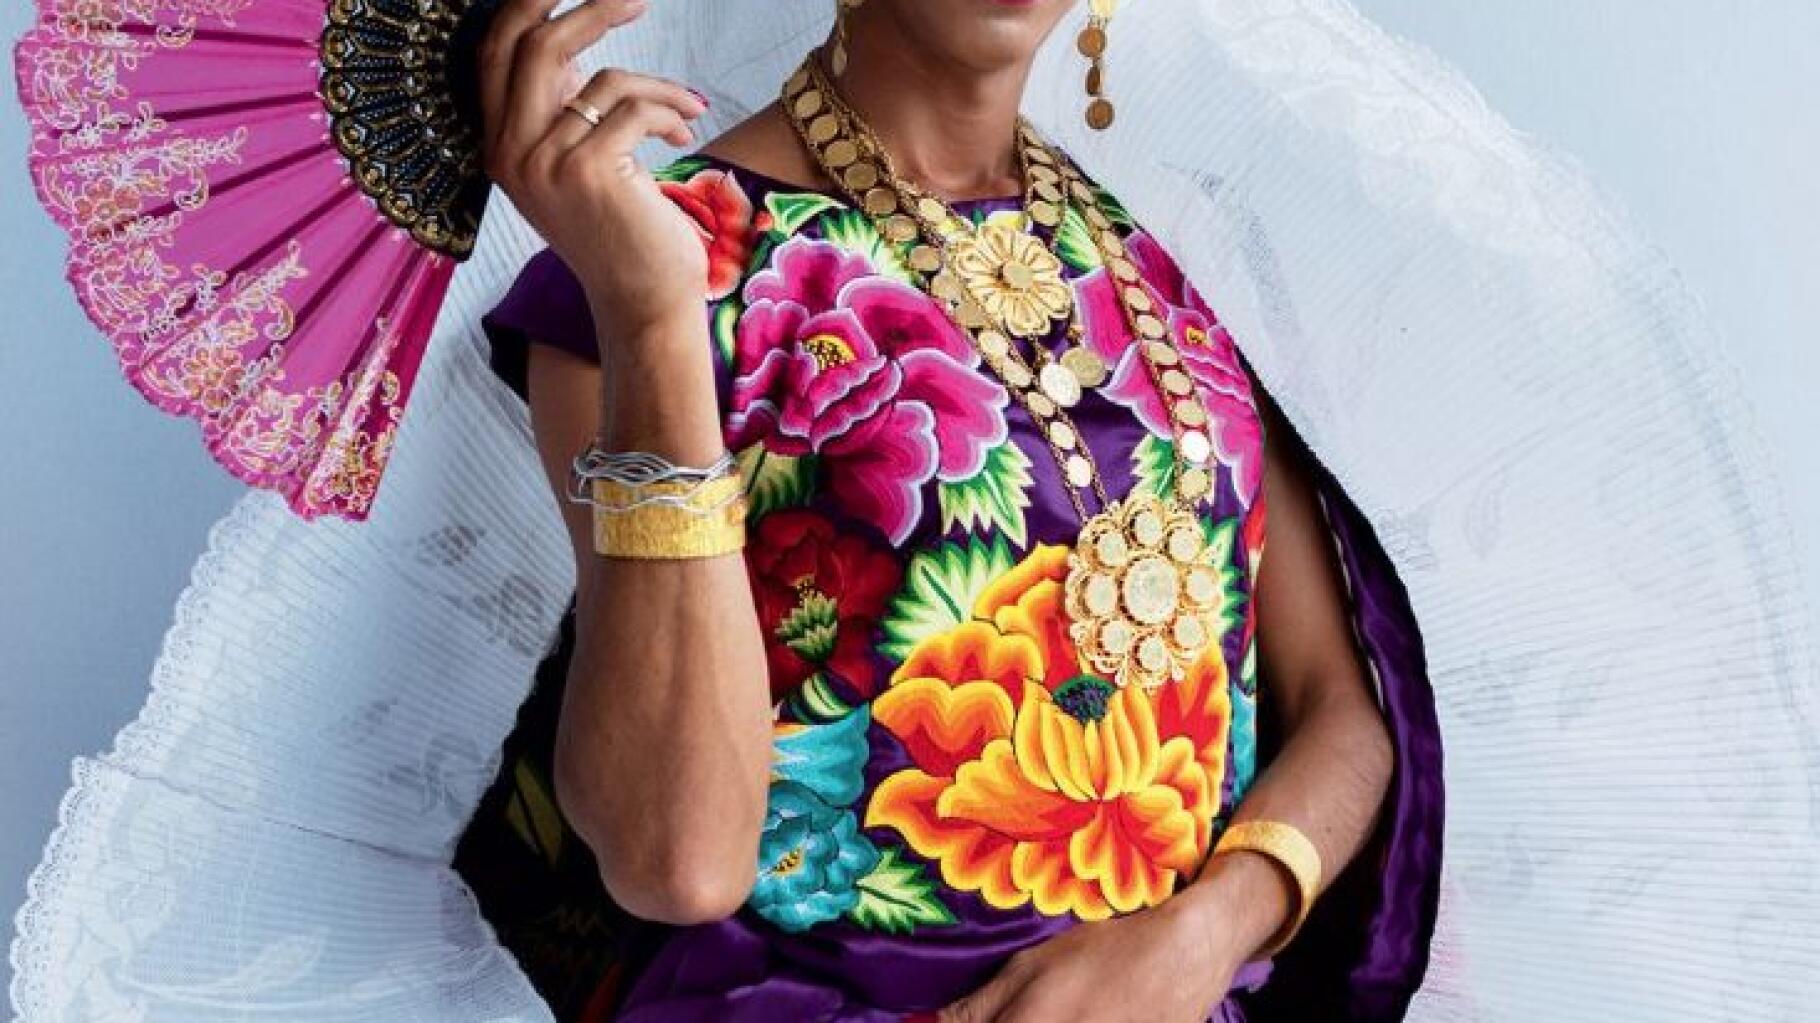 Une femme indigène transgenre en Une de "Vogue" Mexique, une grande première